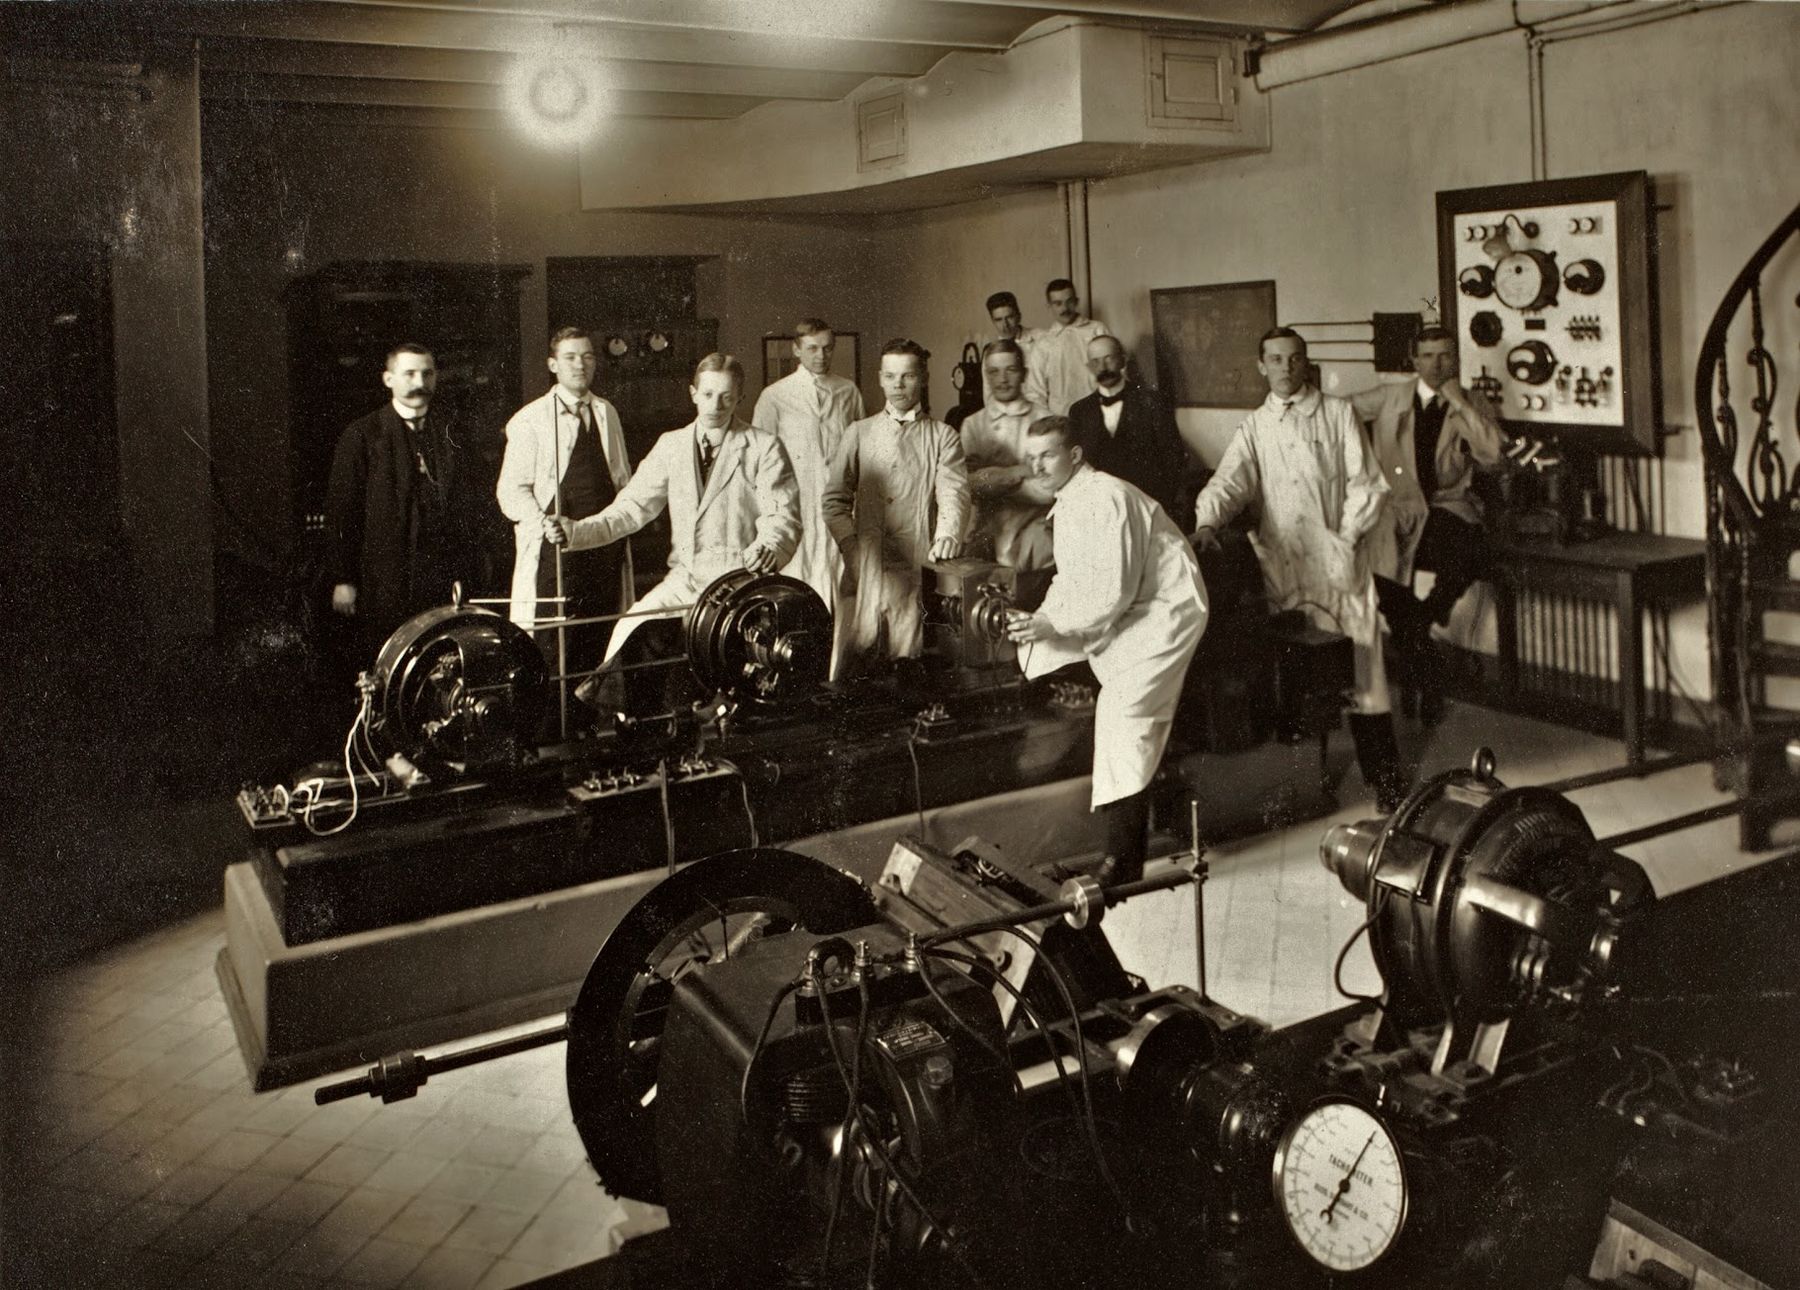 Historiallisessa kuvassa ryhmä miesopiskelijoita ja heidän opettajansa poseeraavat suurten mekaanisten koneiden äärellä